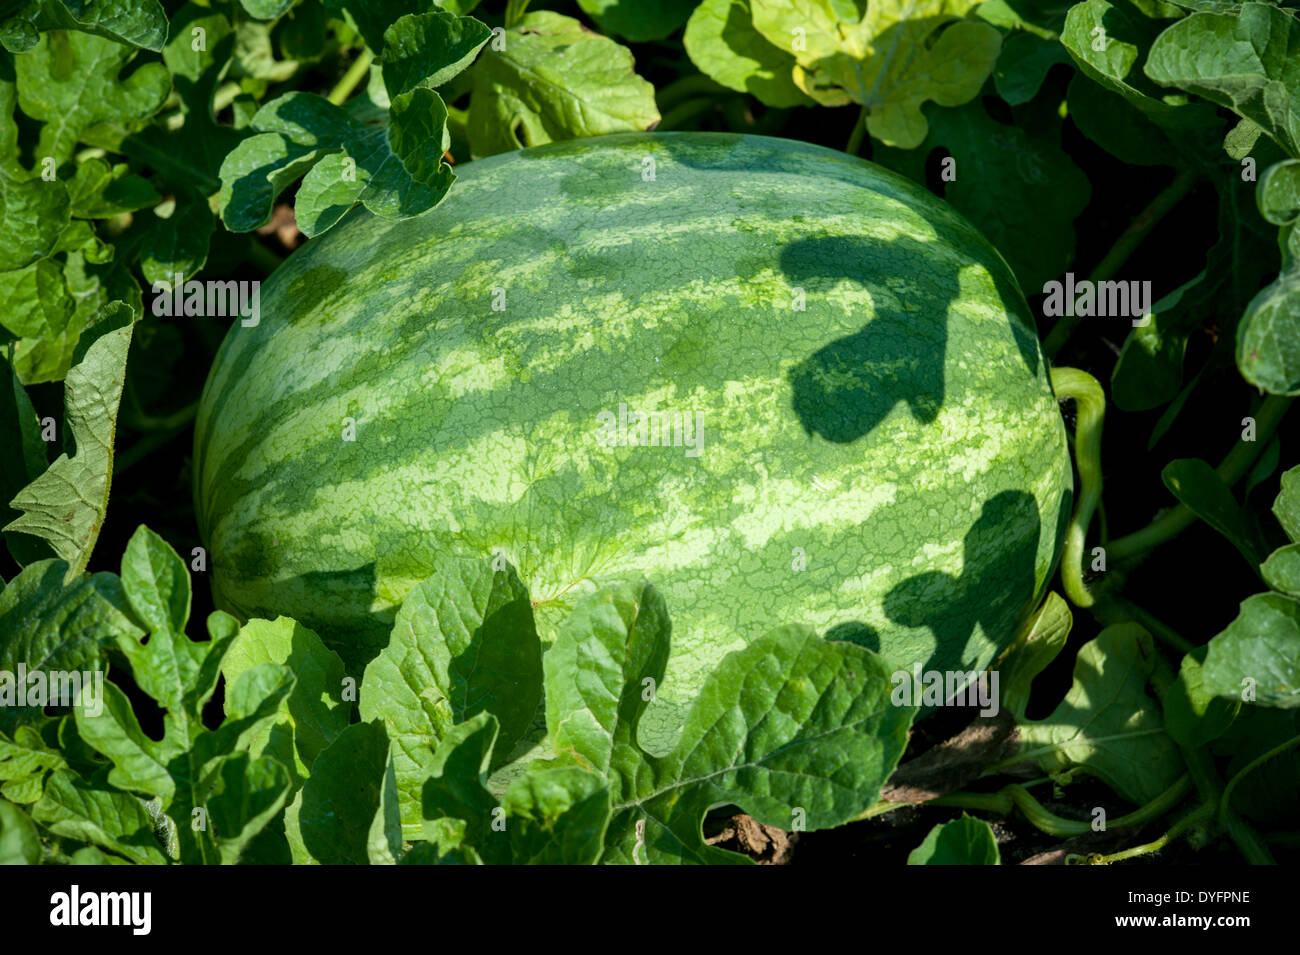 Watermelon growing in field Shelltwon MD Stock Photo